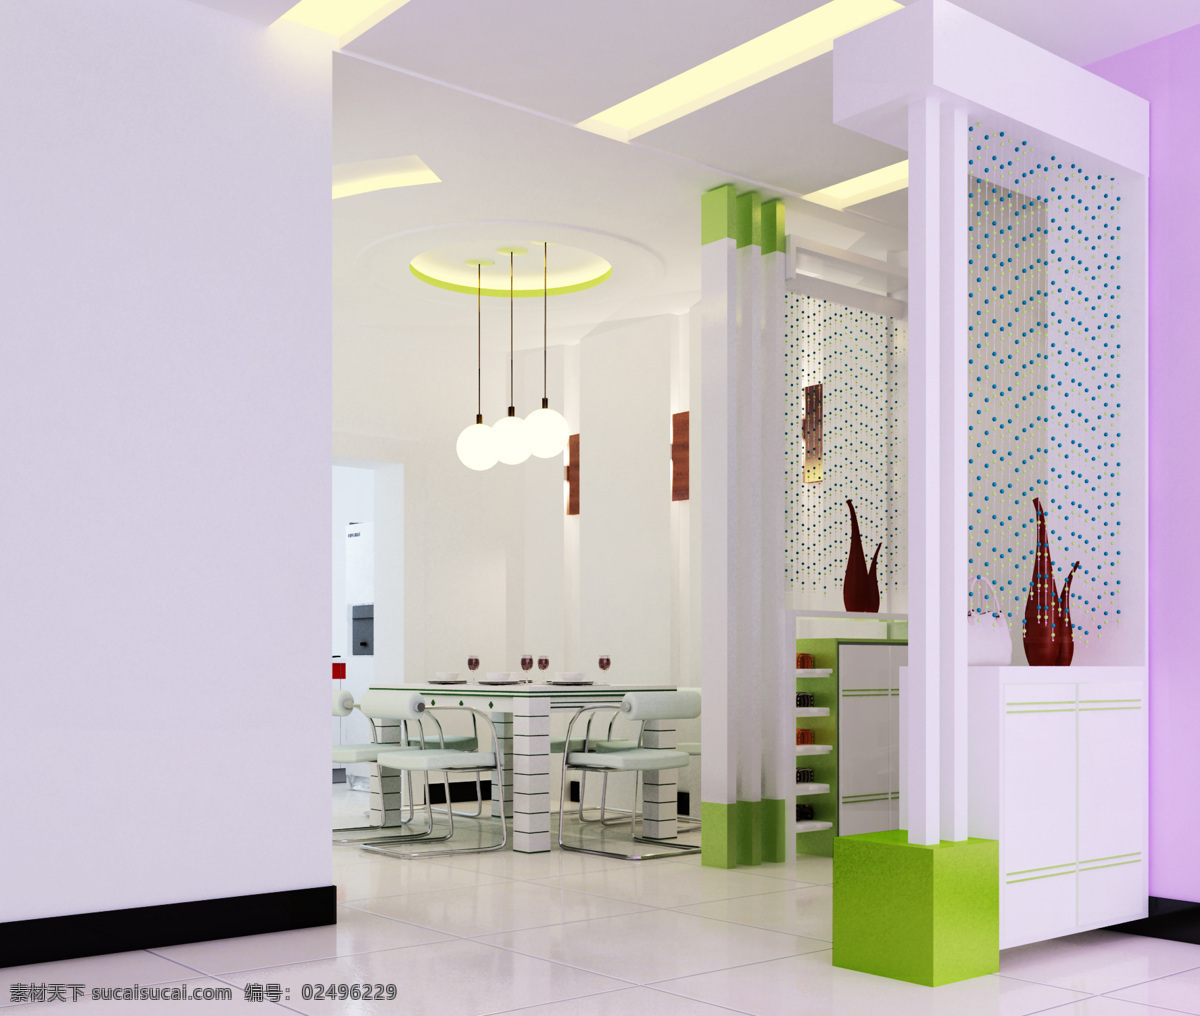 餐厅效果图 室内装修 装璜 室内布置 环境设计 室内设计